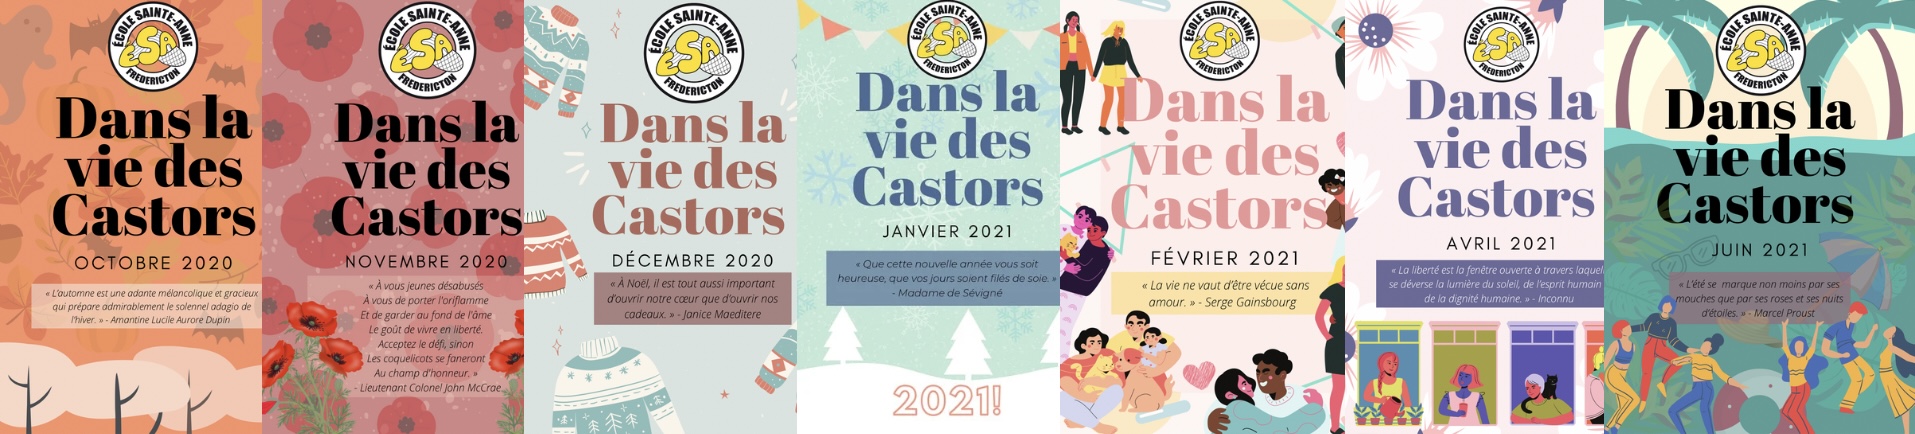 2020-2021 Dans la vie des Castors Journal Issues